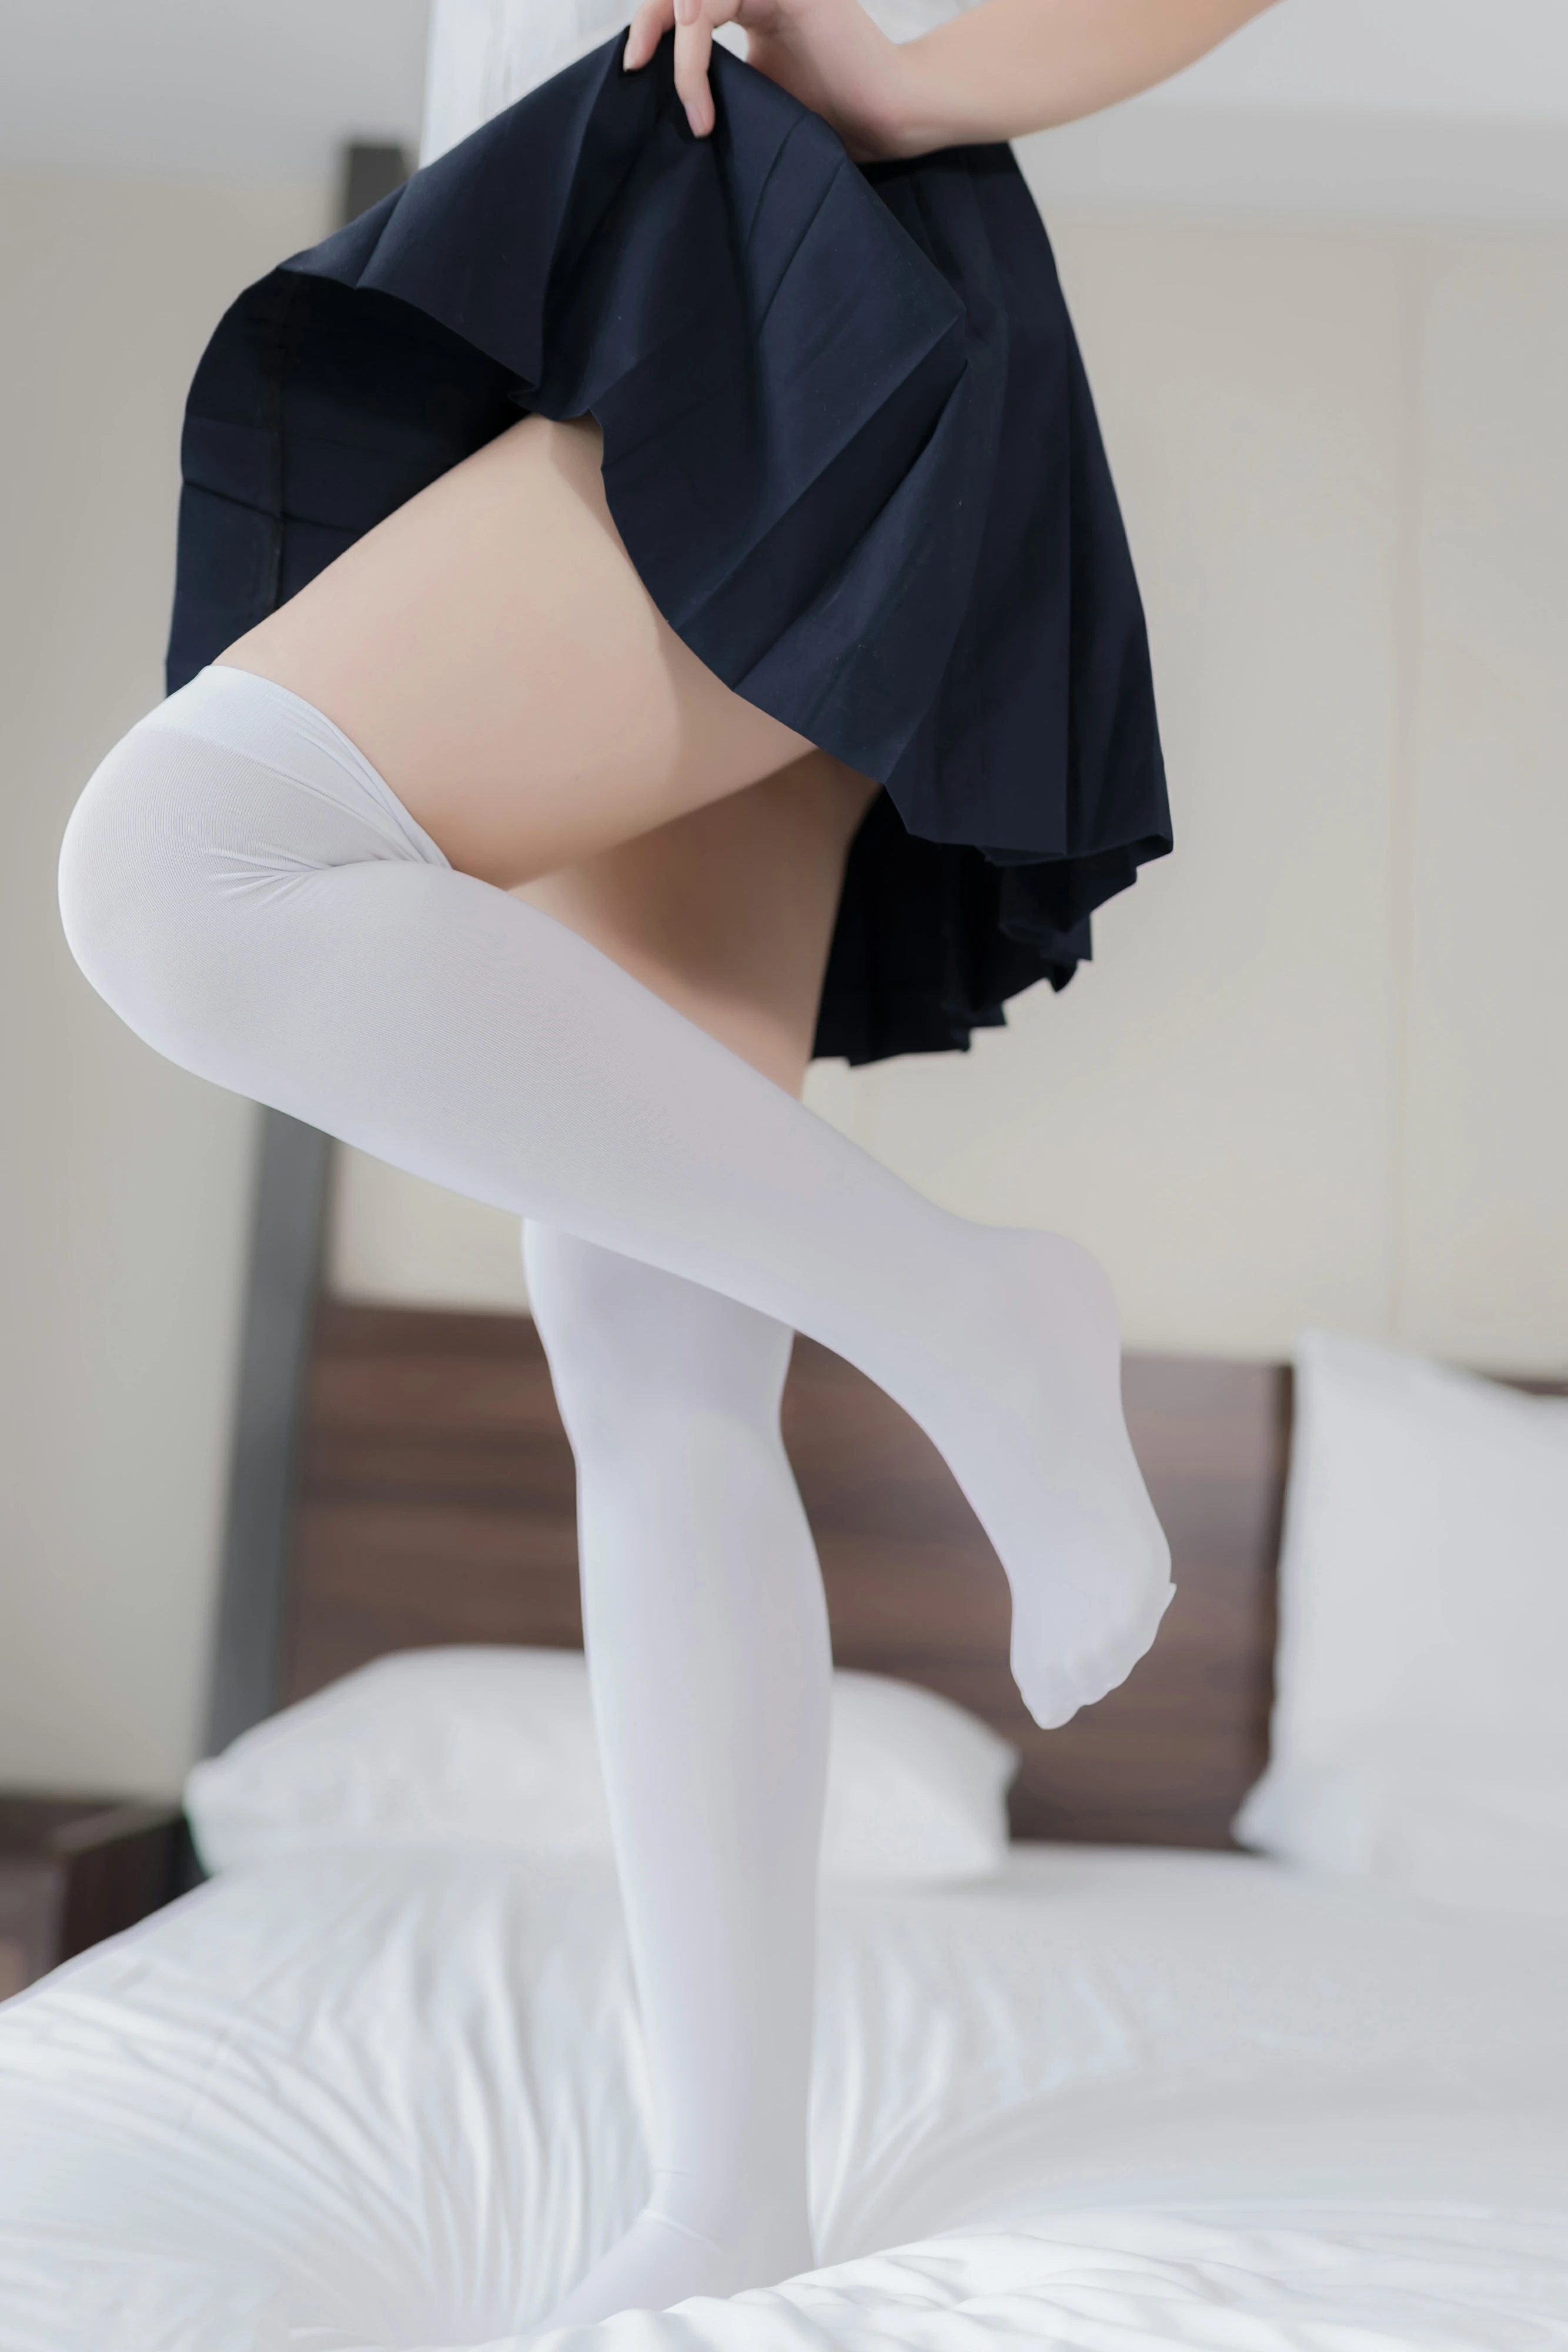 清纯萝莉少女 蜜汁猫裘 白色JK制服与短裙加白色丝袜美腿私房写真集,